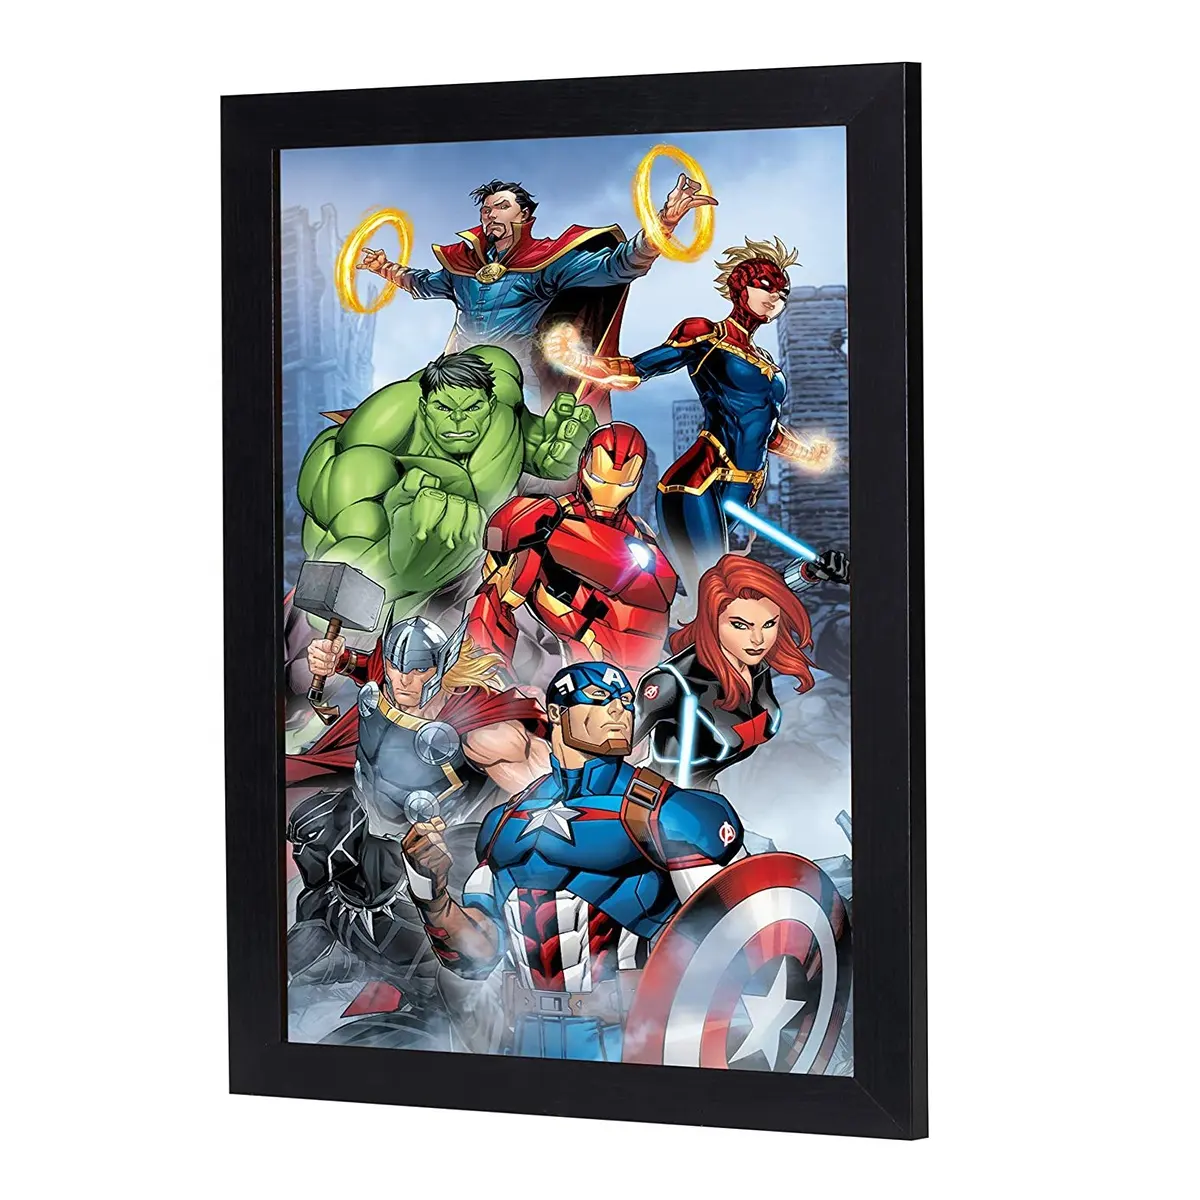 3D merceksi duvar sanatı 3D görüntü çevirme harikaları çizgi roman VS Avengers boyutu 11 "x 16"